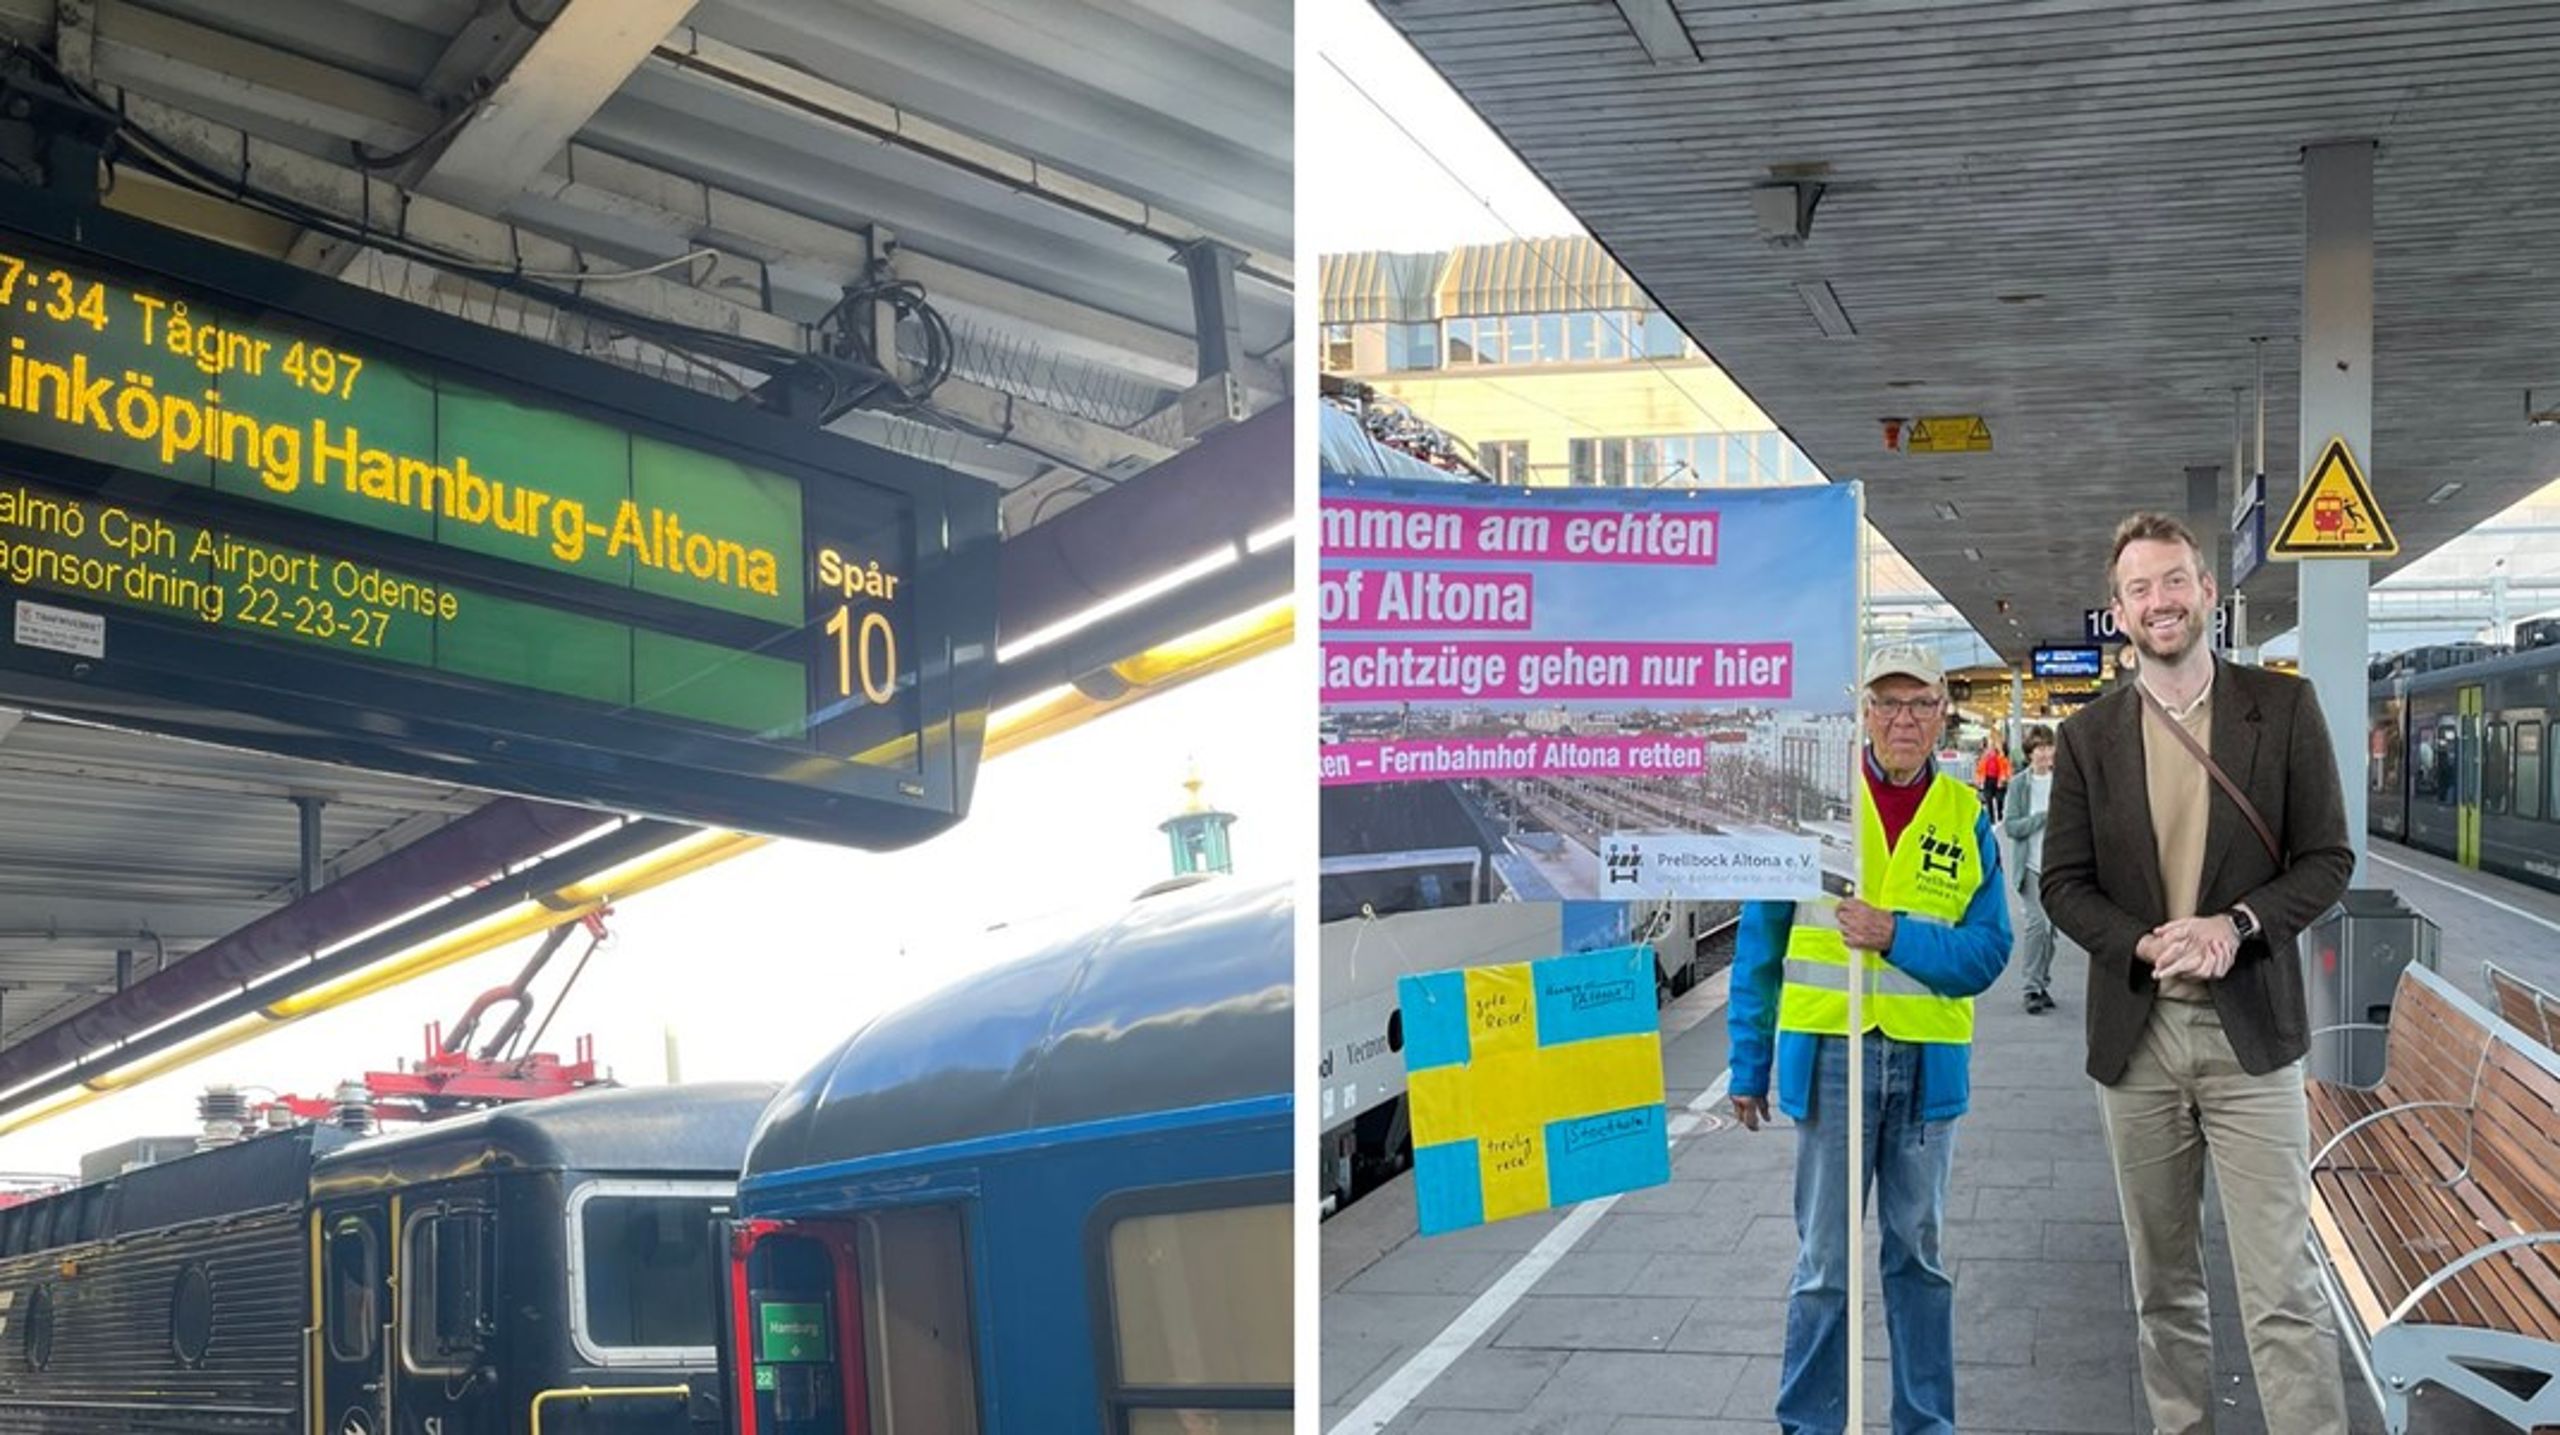 Premiärturen till Hamburg stötte på rejäla problem efter att halva 
tågsetet inte fick godkänt för att köra genom Danmark. Men 
nattågsaktivister i "back-on-track" välkomnade ändå premiärresenärerna